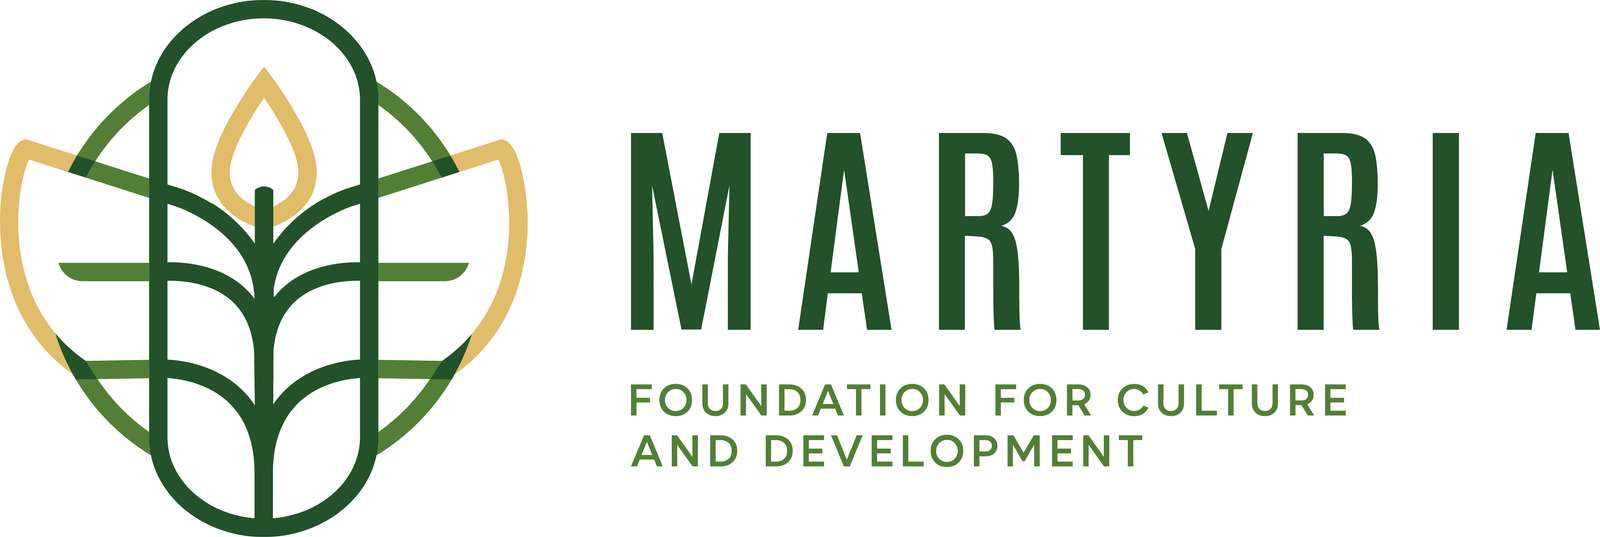 Logo pentru martyria 43fdgy puzzle online din fotografie